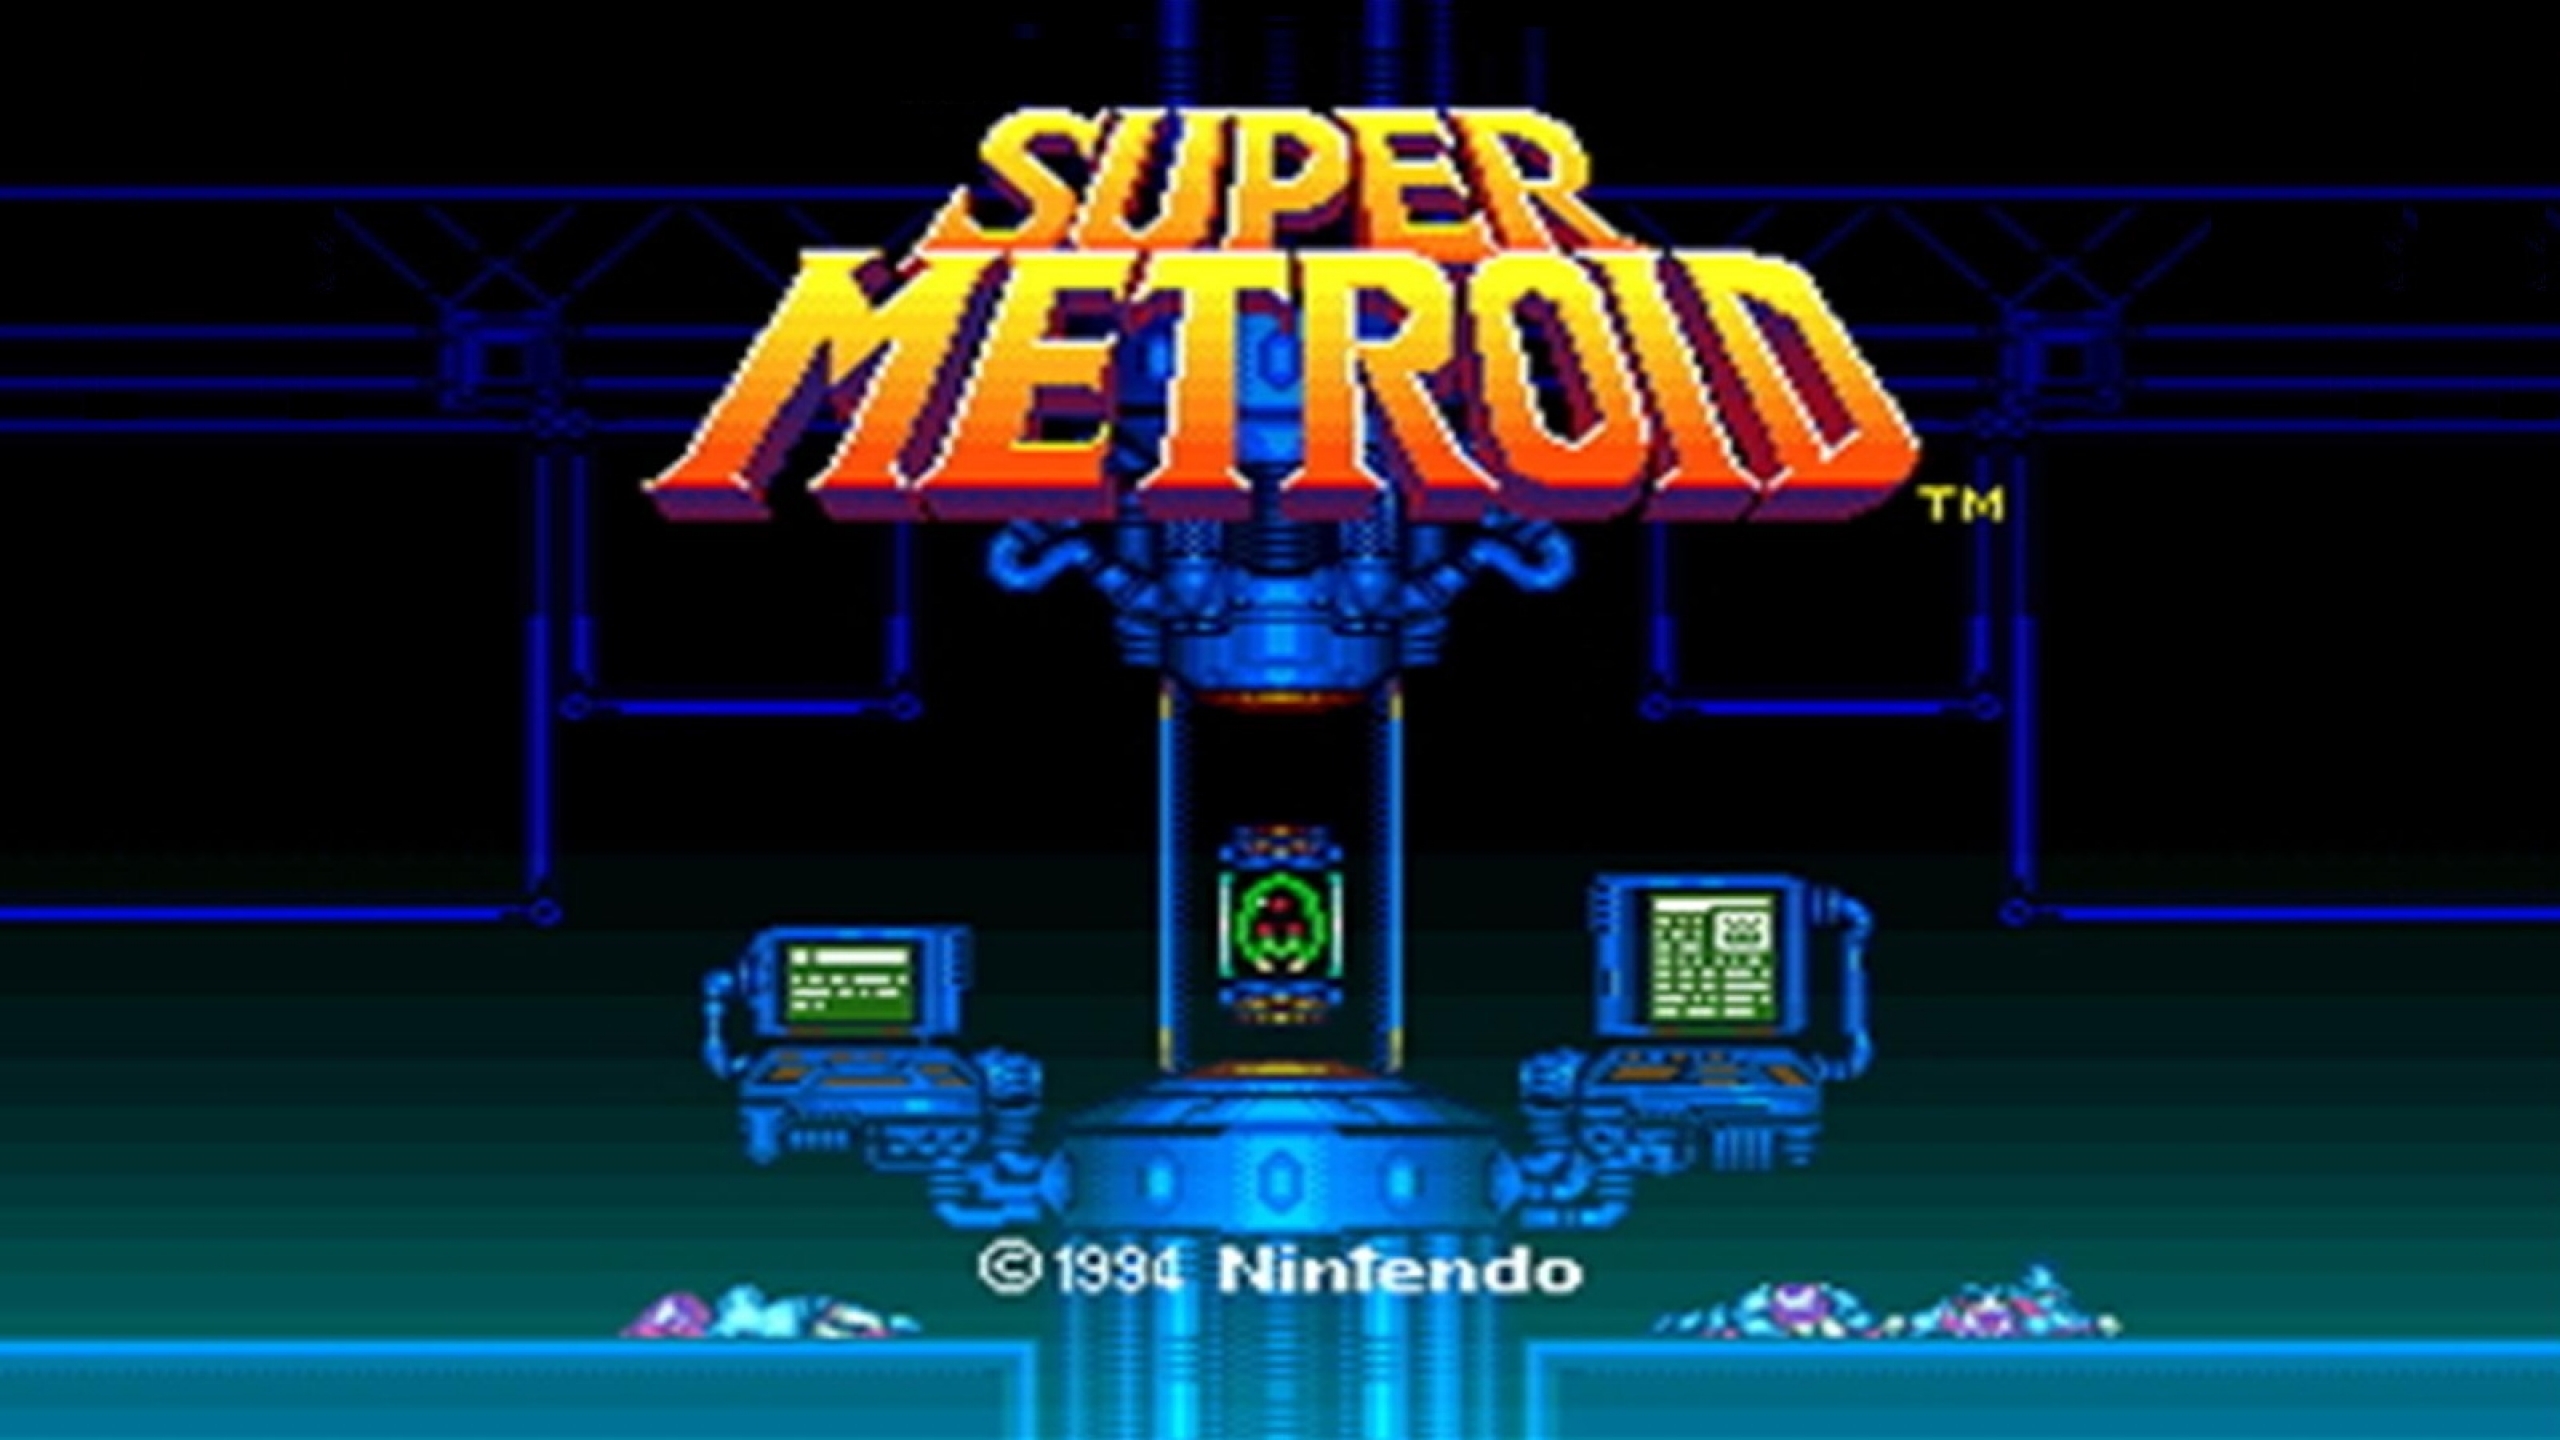 Super Metroid Computer Wallpapers Desktop Backgrounds 2560x1440